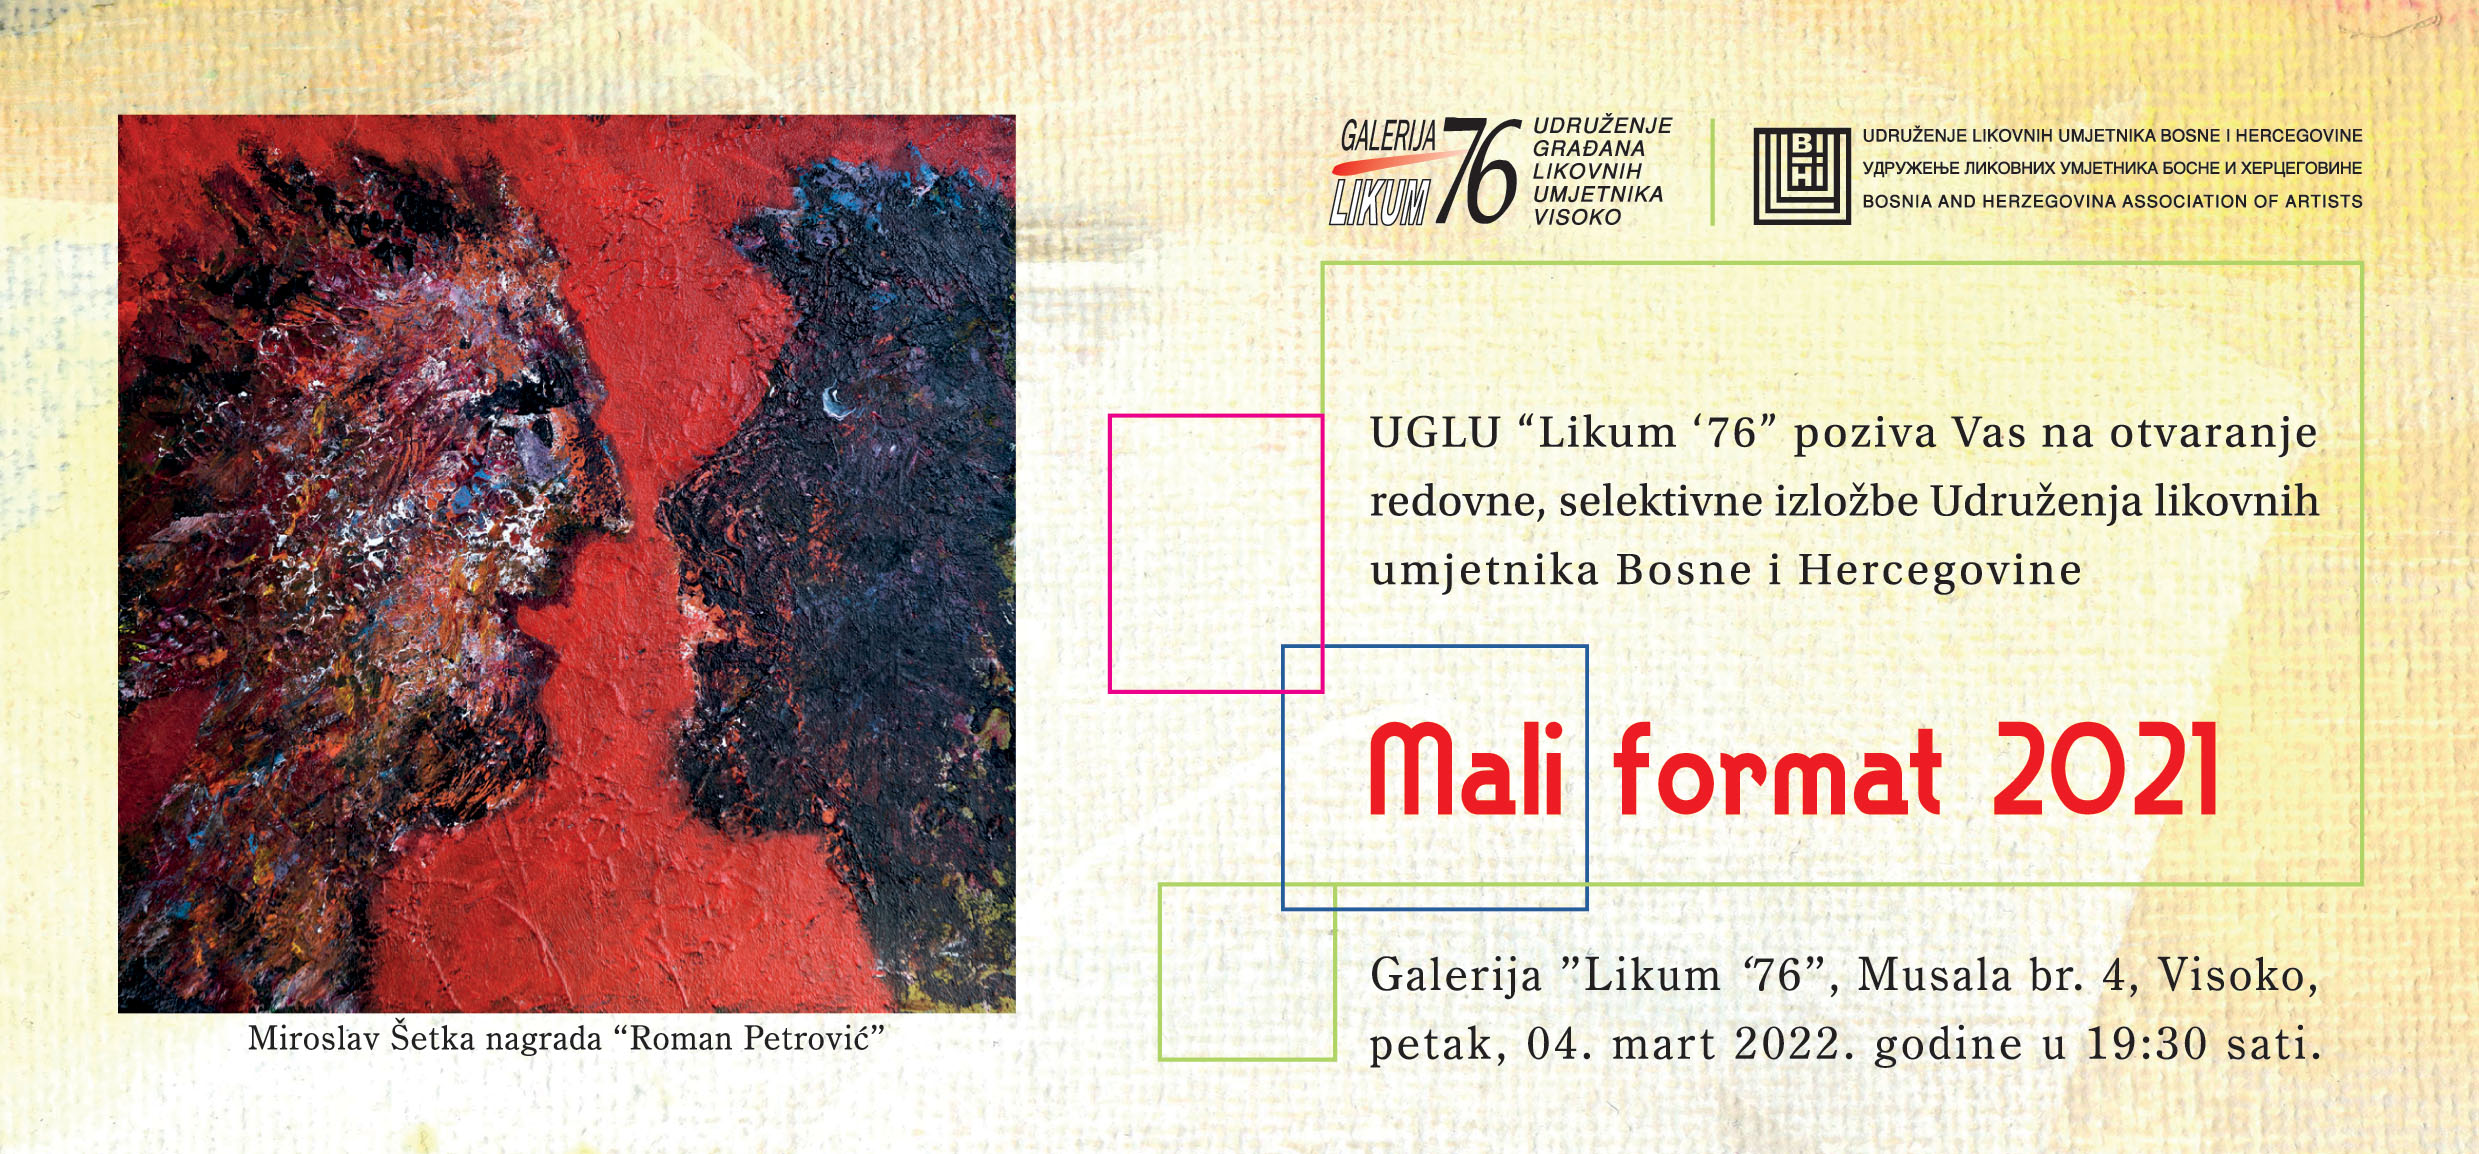 U petak otvorenje izložbe “Mali format” u Galeriji “Likum '76” u Visokom